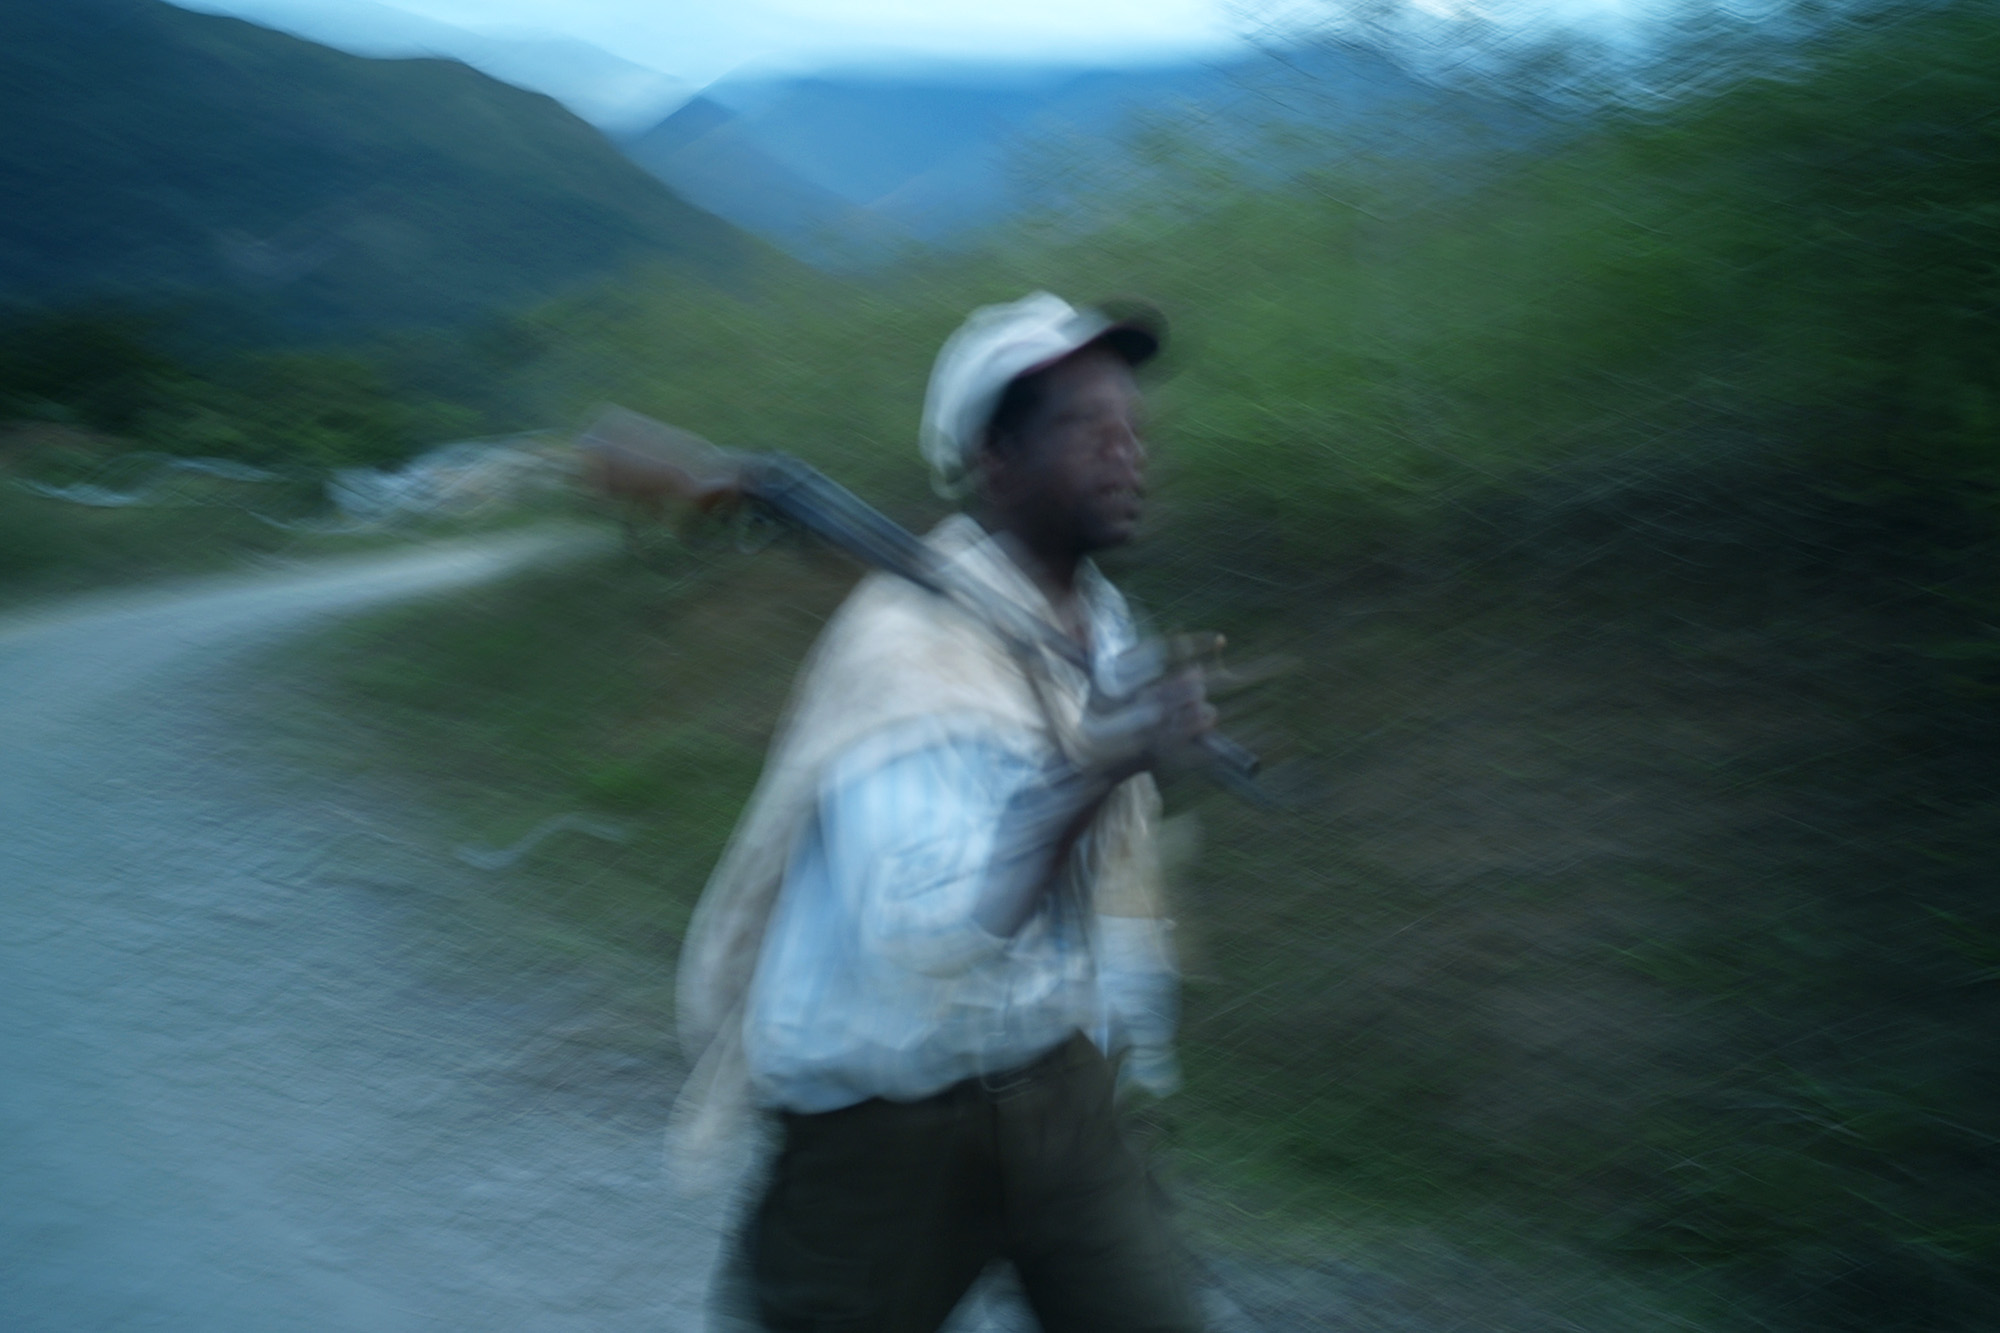 May 26, 2009 - Tocana, Bolivia - An Afro-Bolivian hunter returns home at dusk.